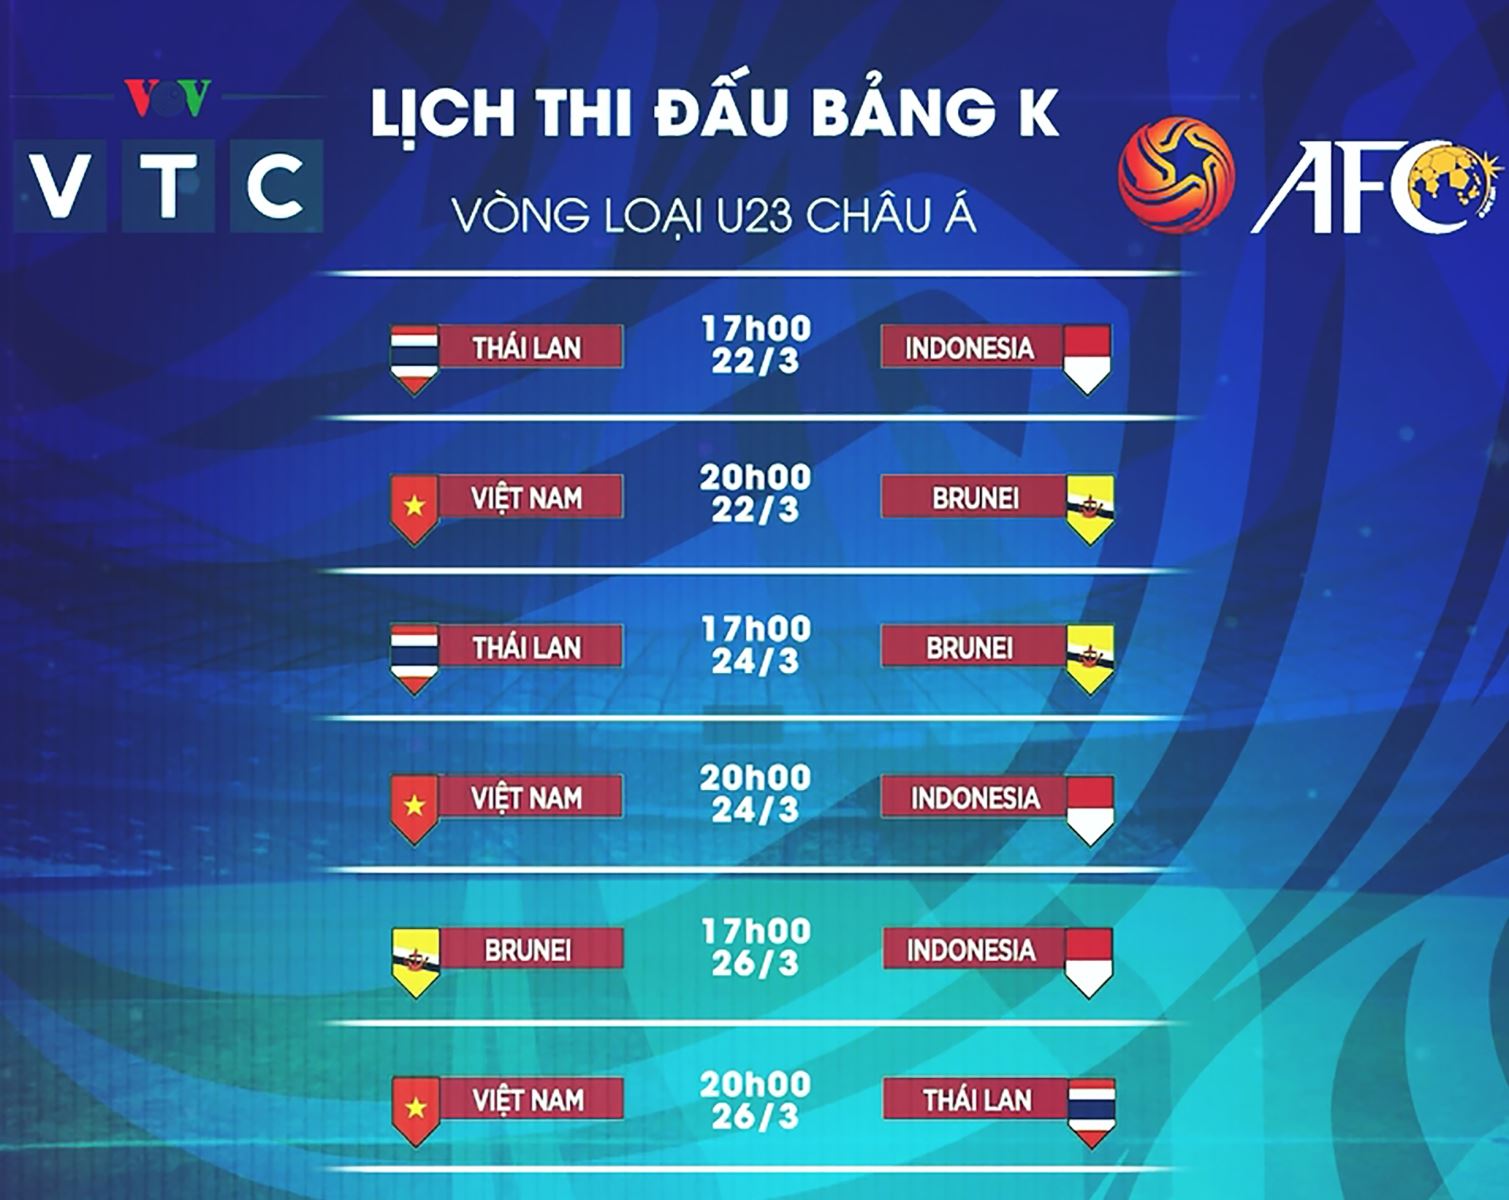 Lịch thi đấu U23 châu Á. U23 Việt Nam. Xem trực tiếp bóng đá VTC3 VTV5